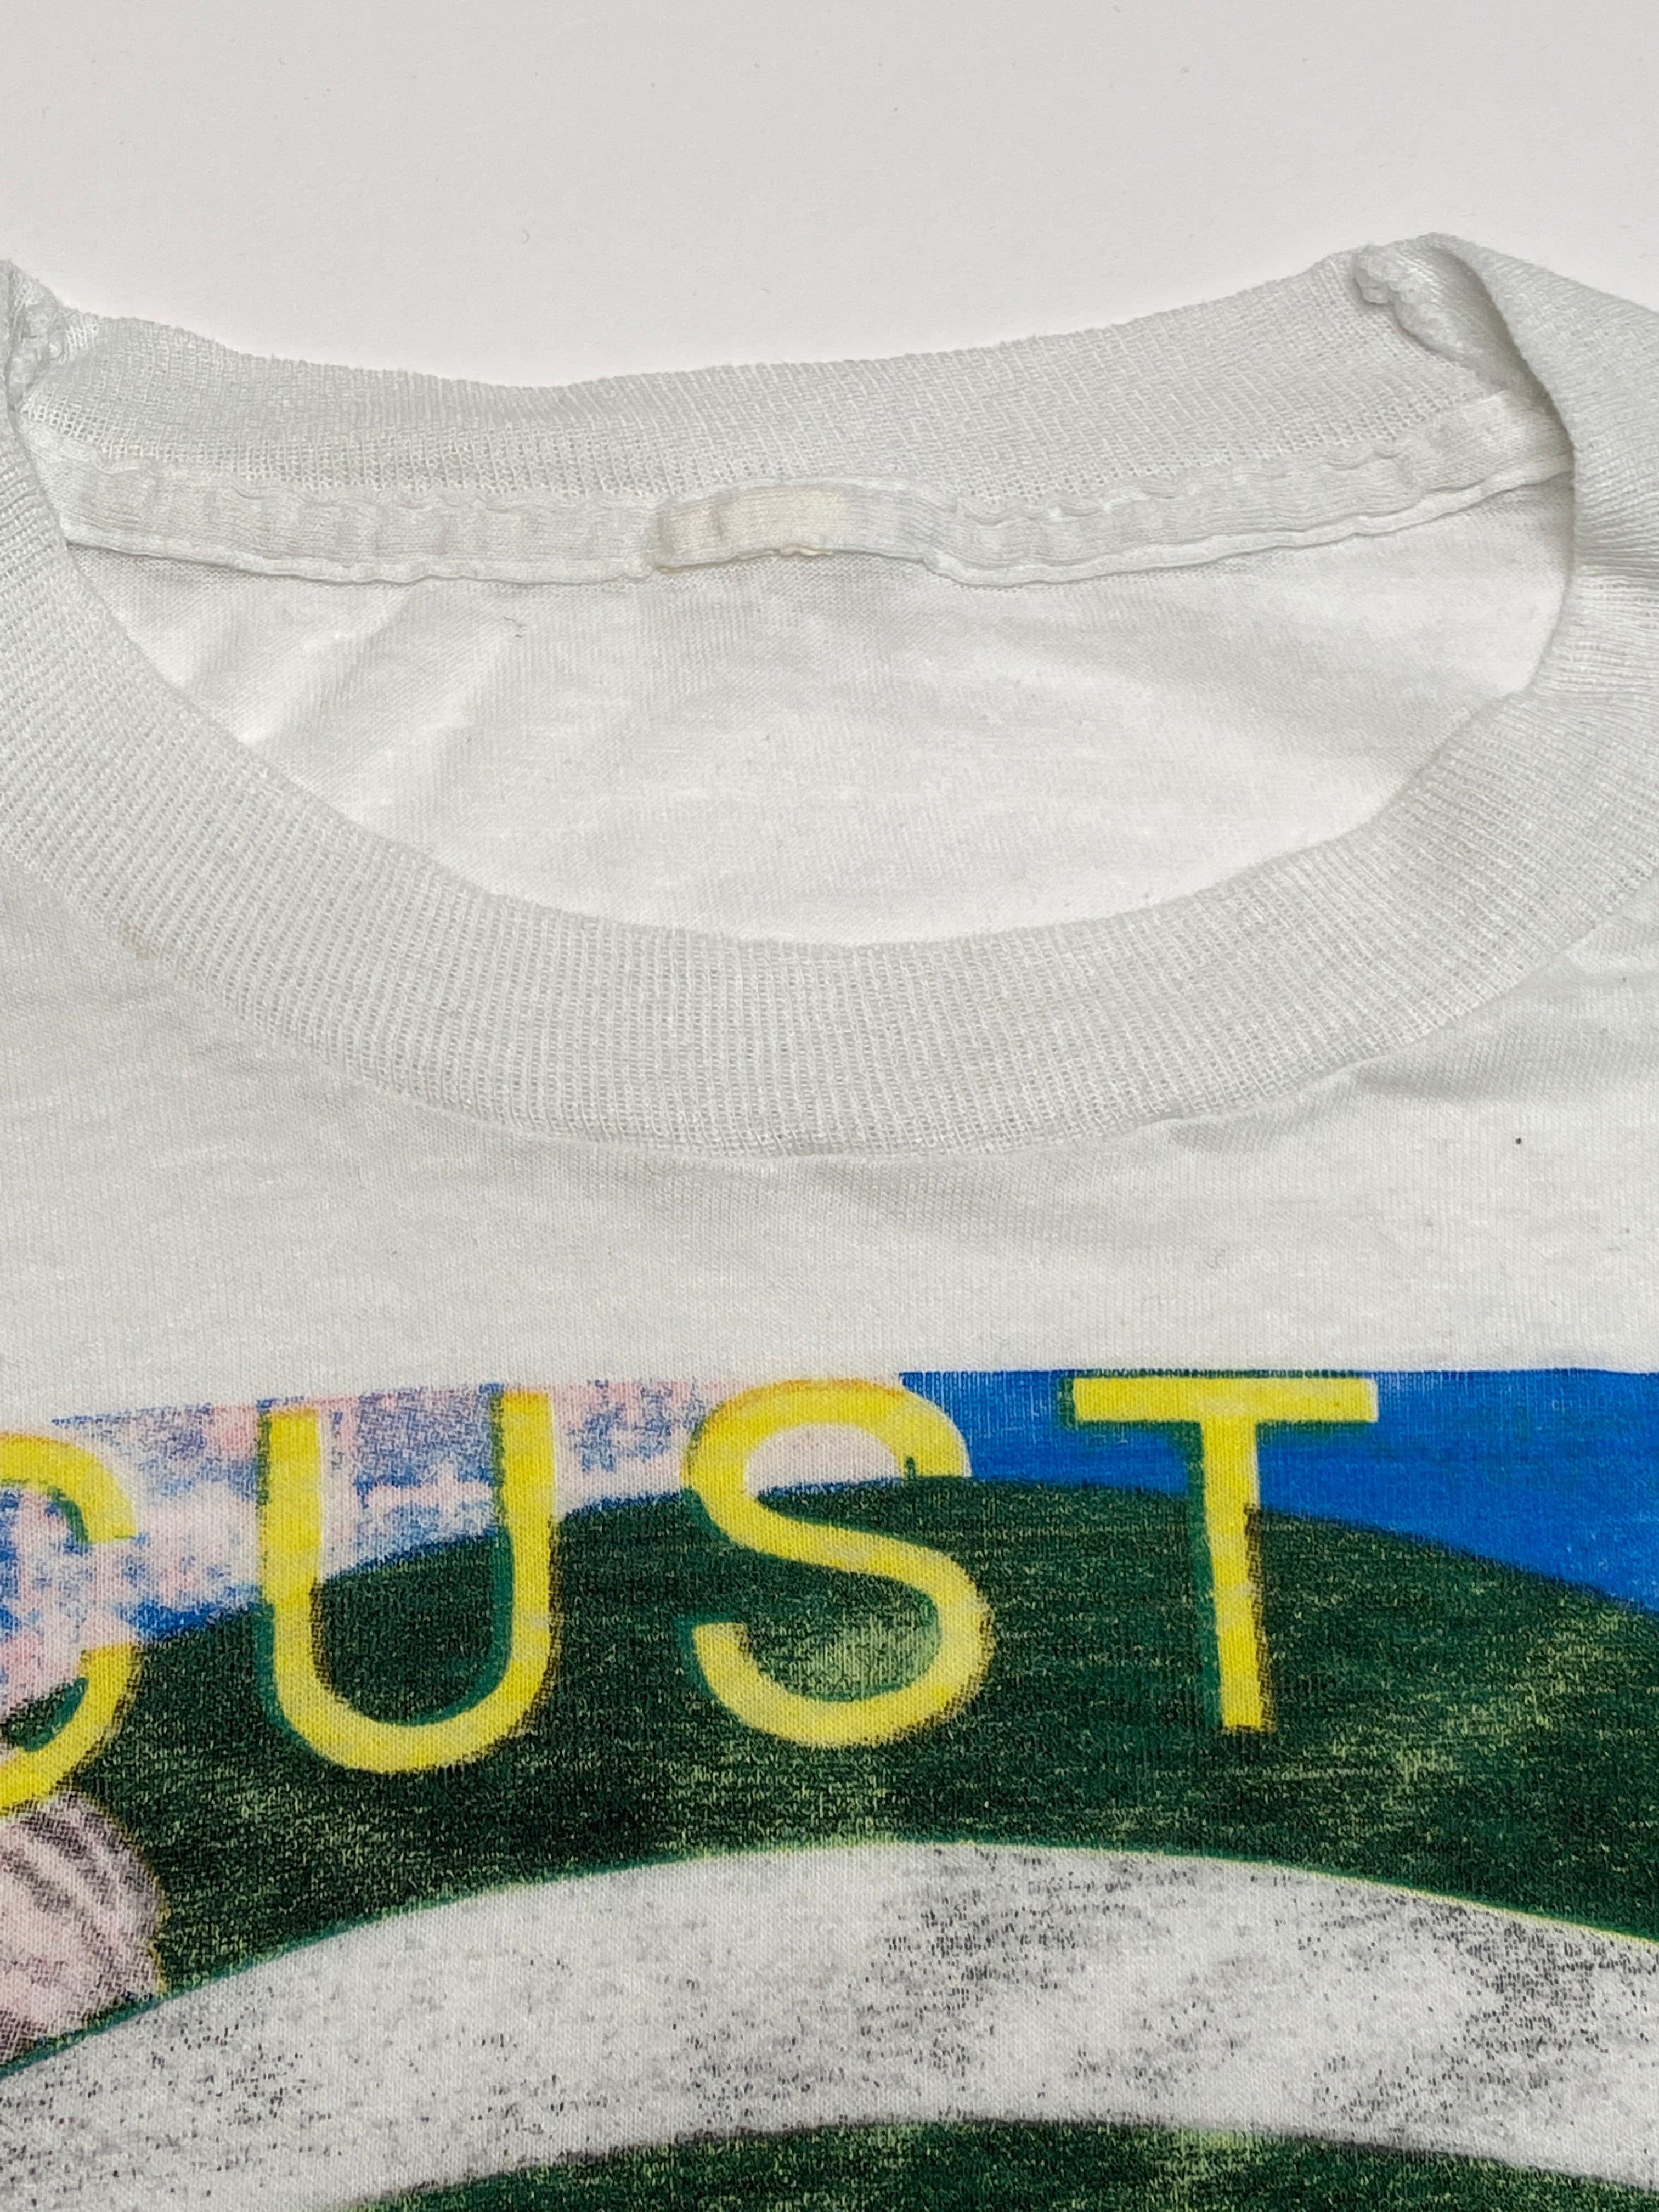 Butthole Surfers - Locust Abortion Technician Tour Shirt Size Large